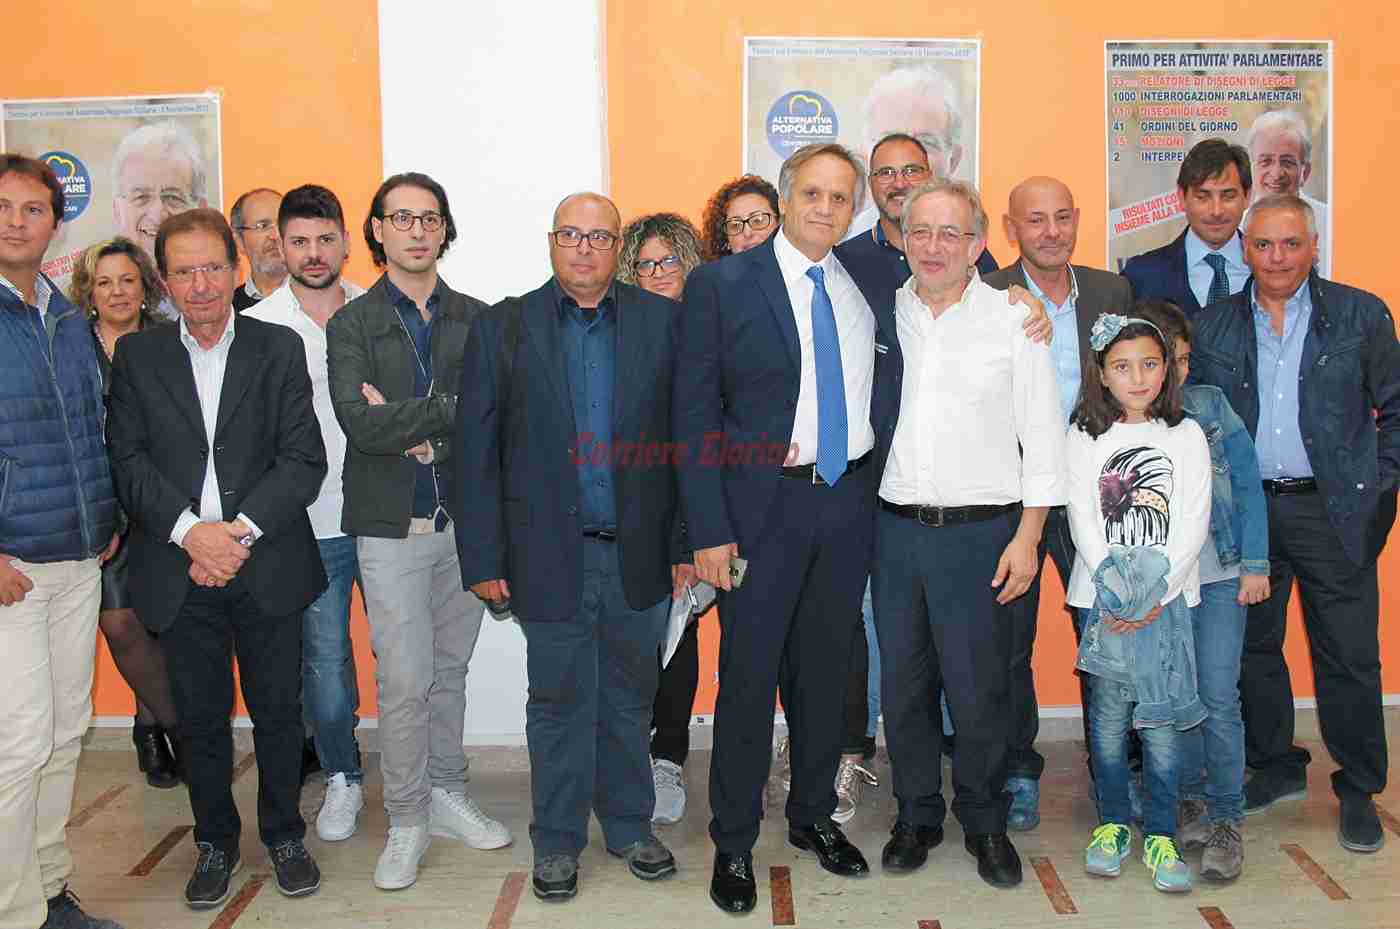 Vinciullo inaugura il comitato elettorale a Rosolini: “Da oltre 30 anni lavoriamo con onestà”